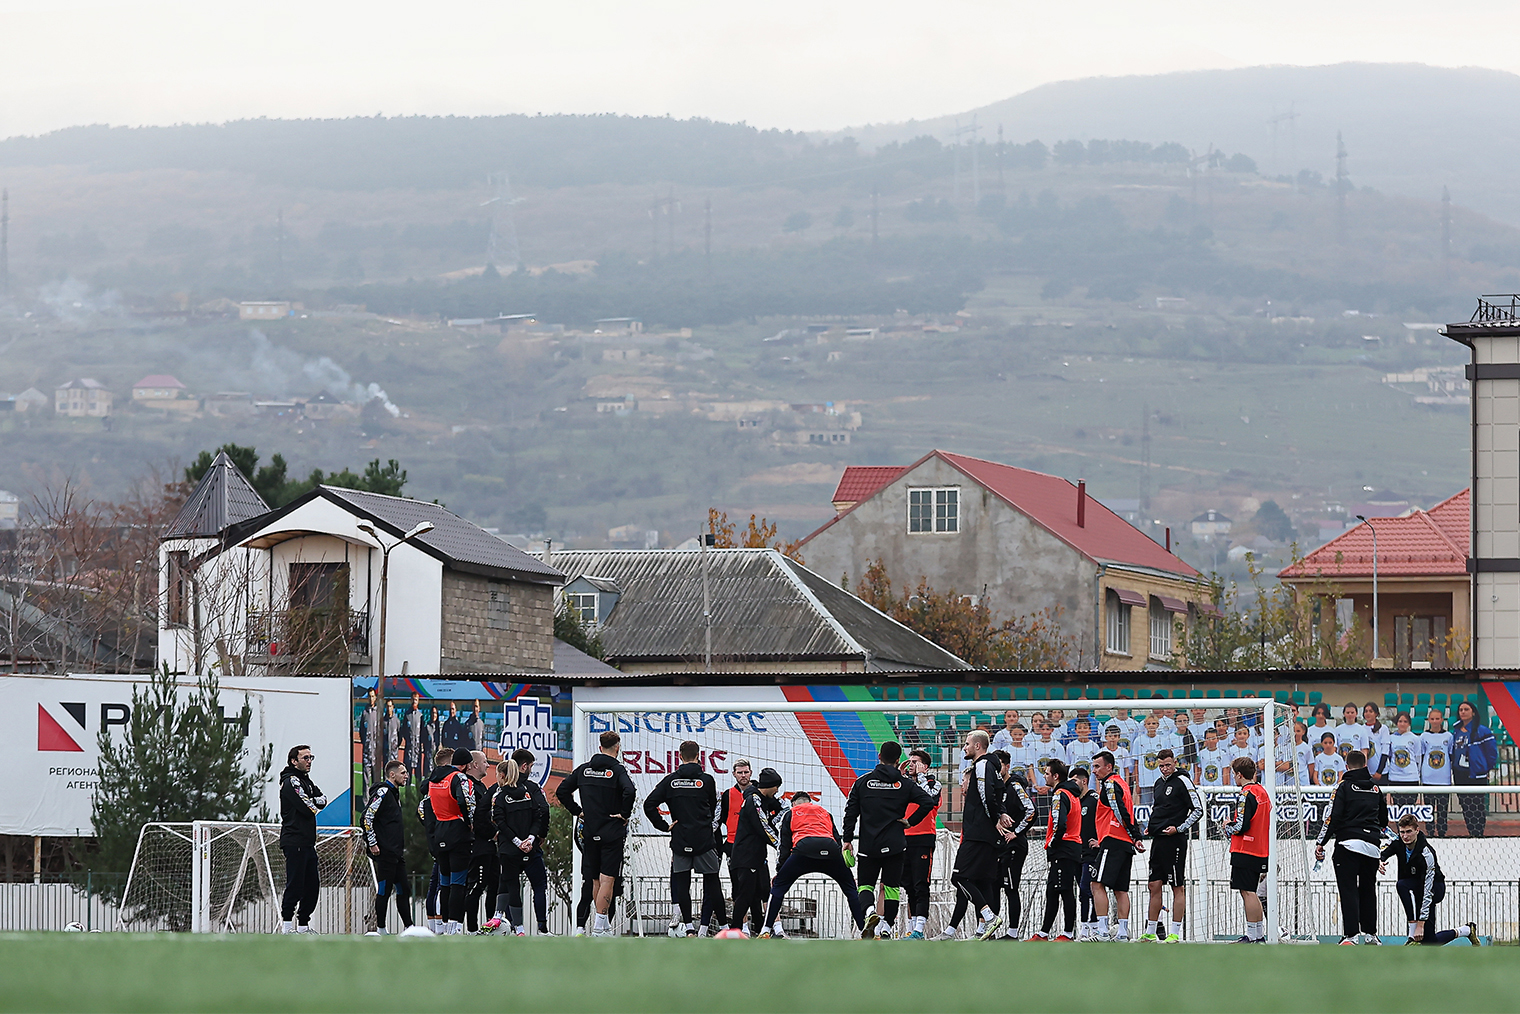 Сборная Медиалиги на тренировке в Махачкале. Источник: сообщество Winline Media Football League во «Вконтакте»